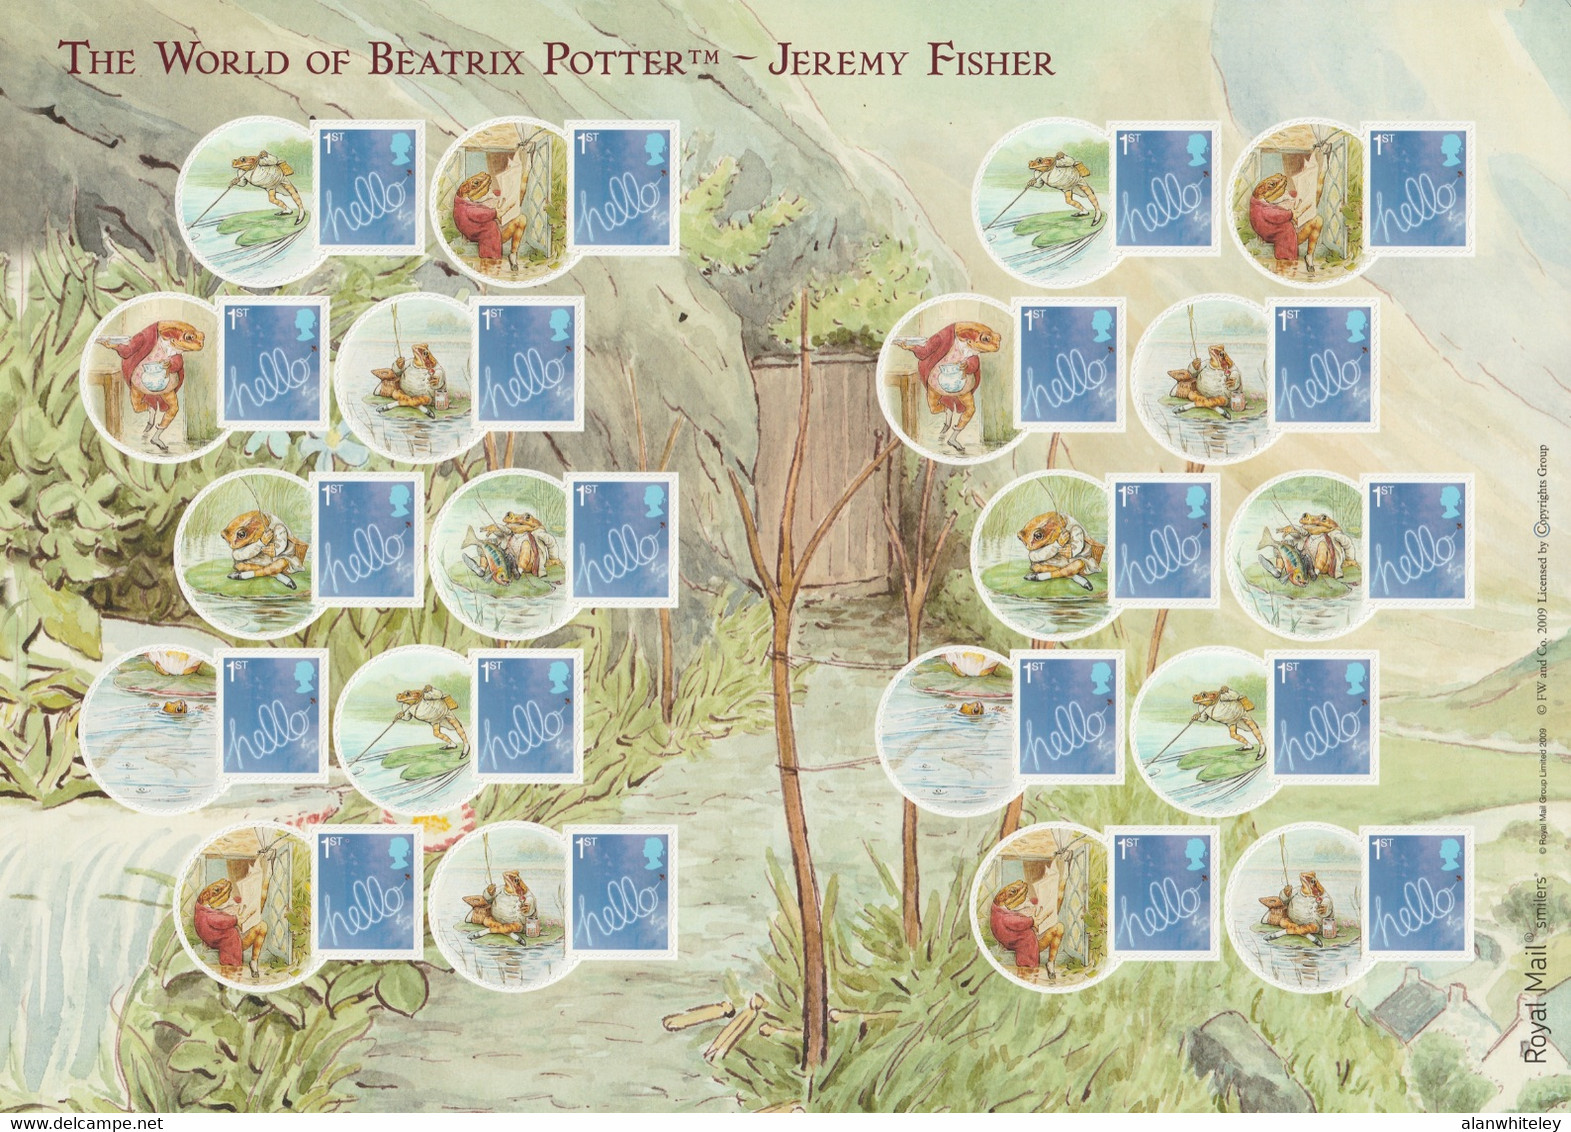 GREAT BRITAIN 2009 Jeremy Fisher / Hello: Smilers Sheet Of 20 Stamps UM/MNH - Personalisierte Briefmarken